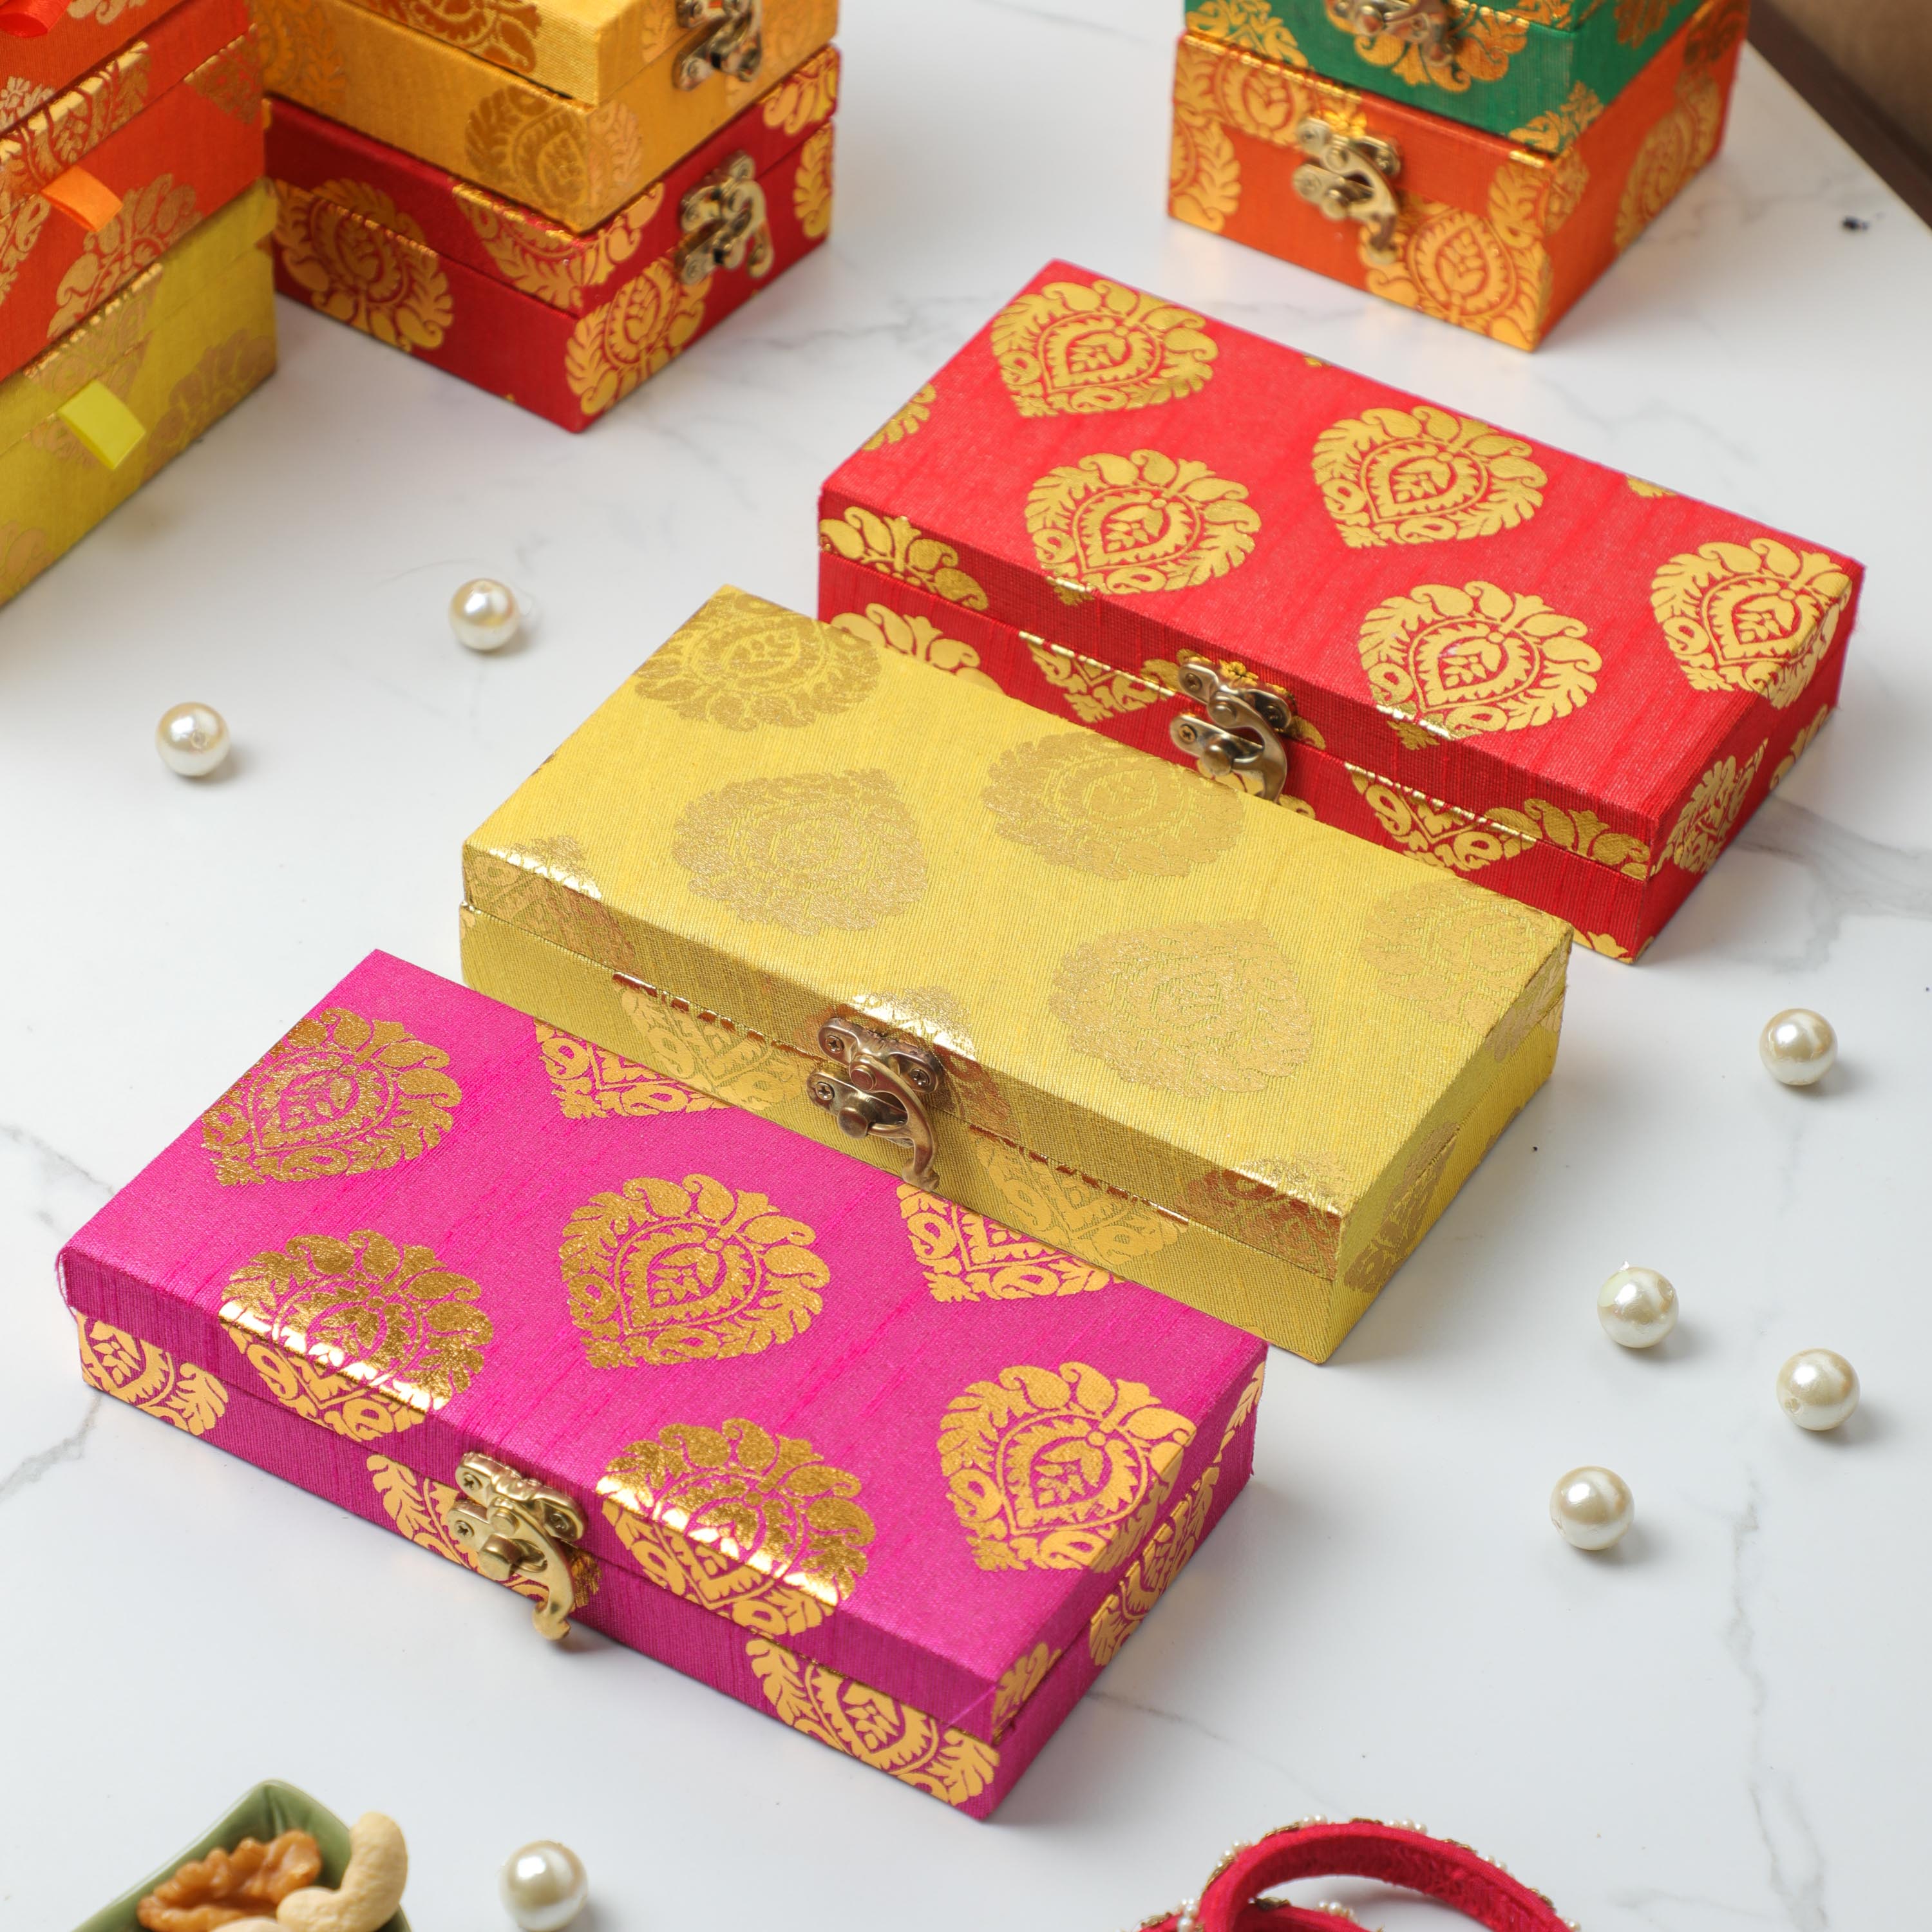 Elegant Design Shagun boxes for wedding ceremonies